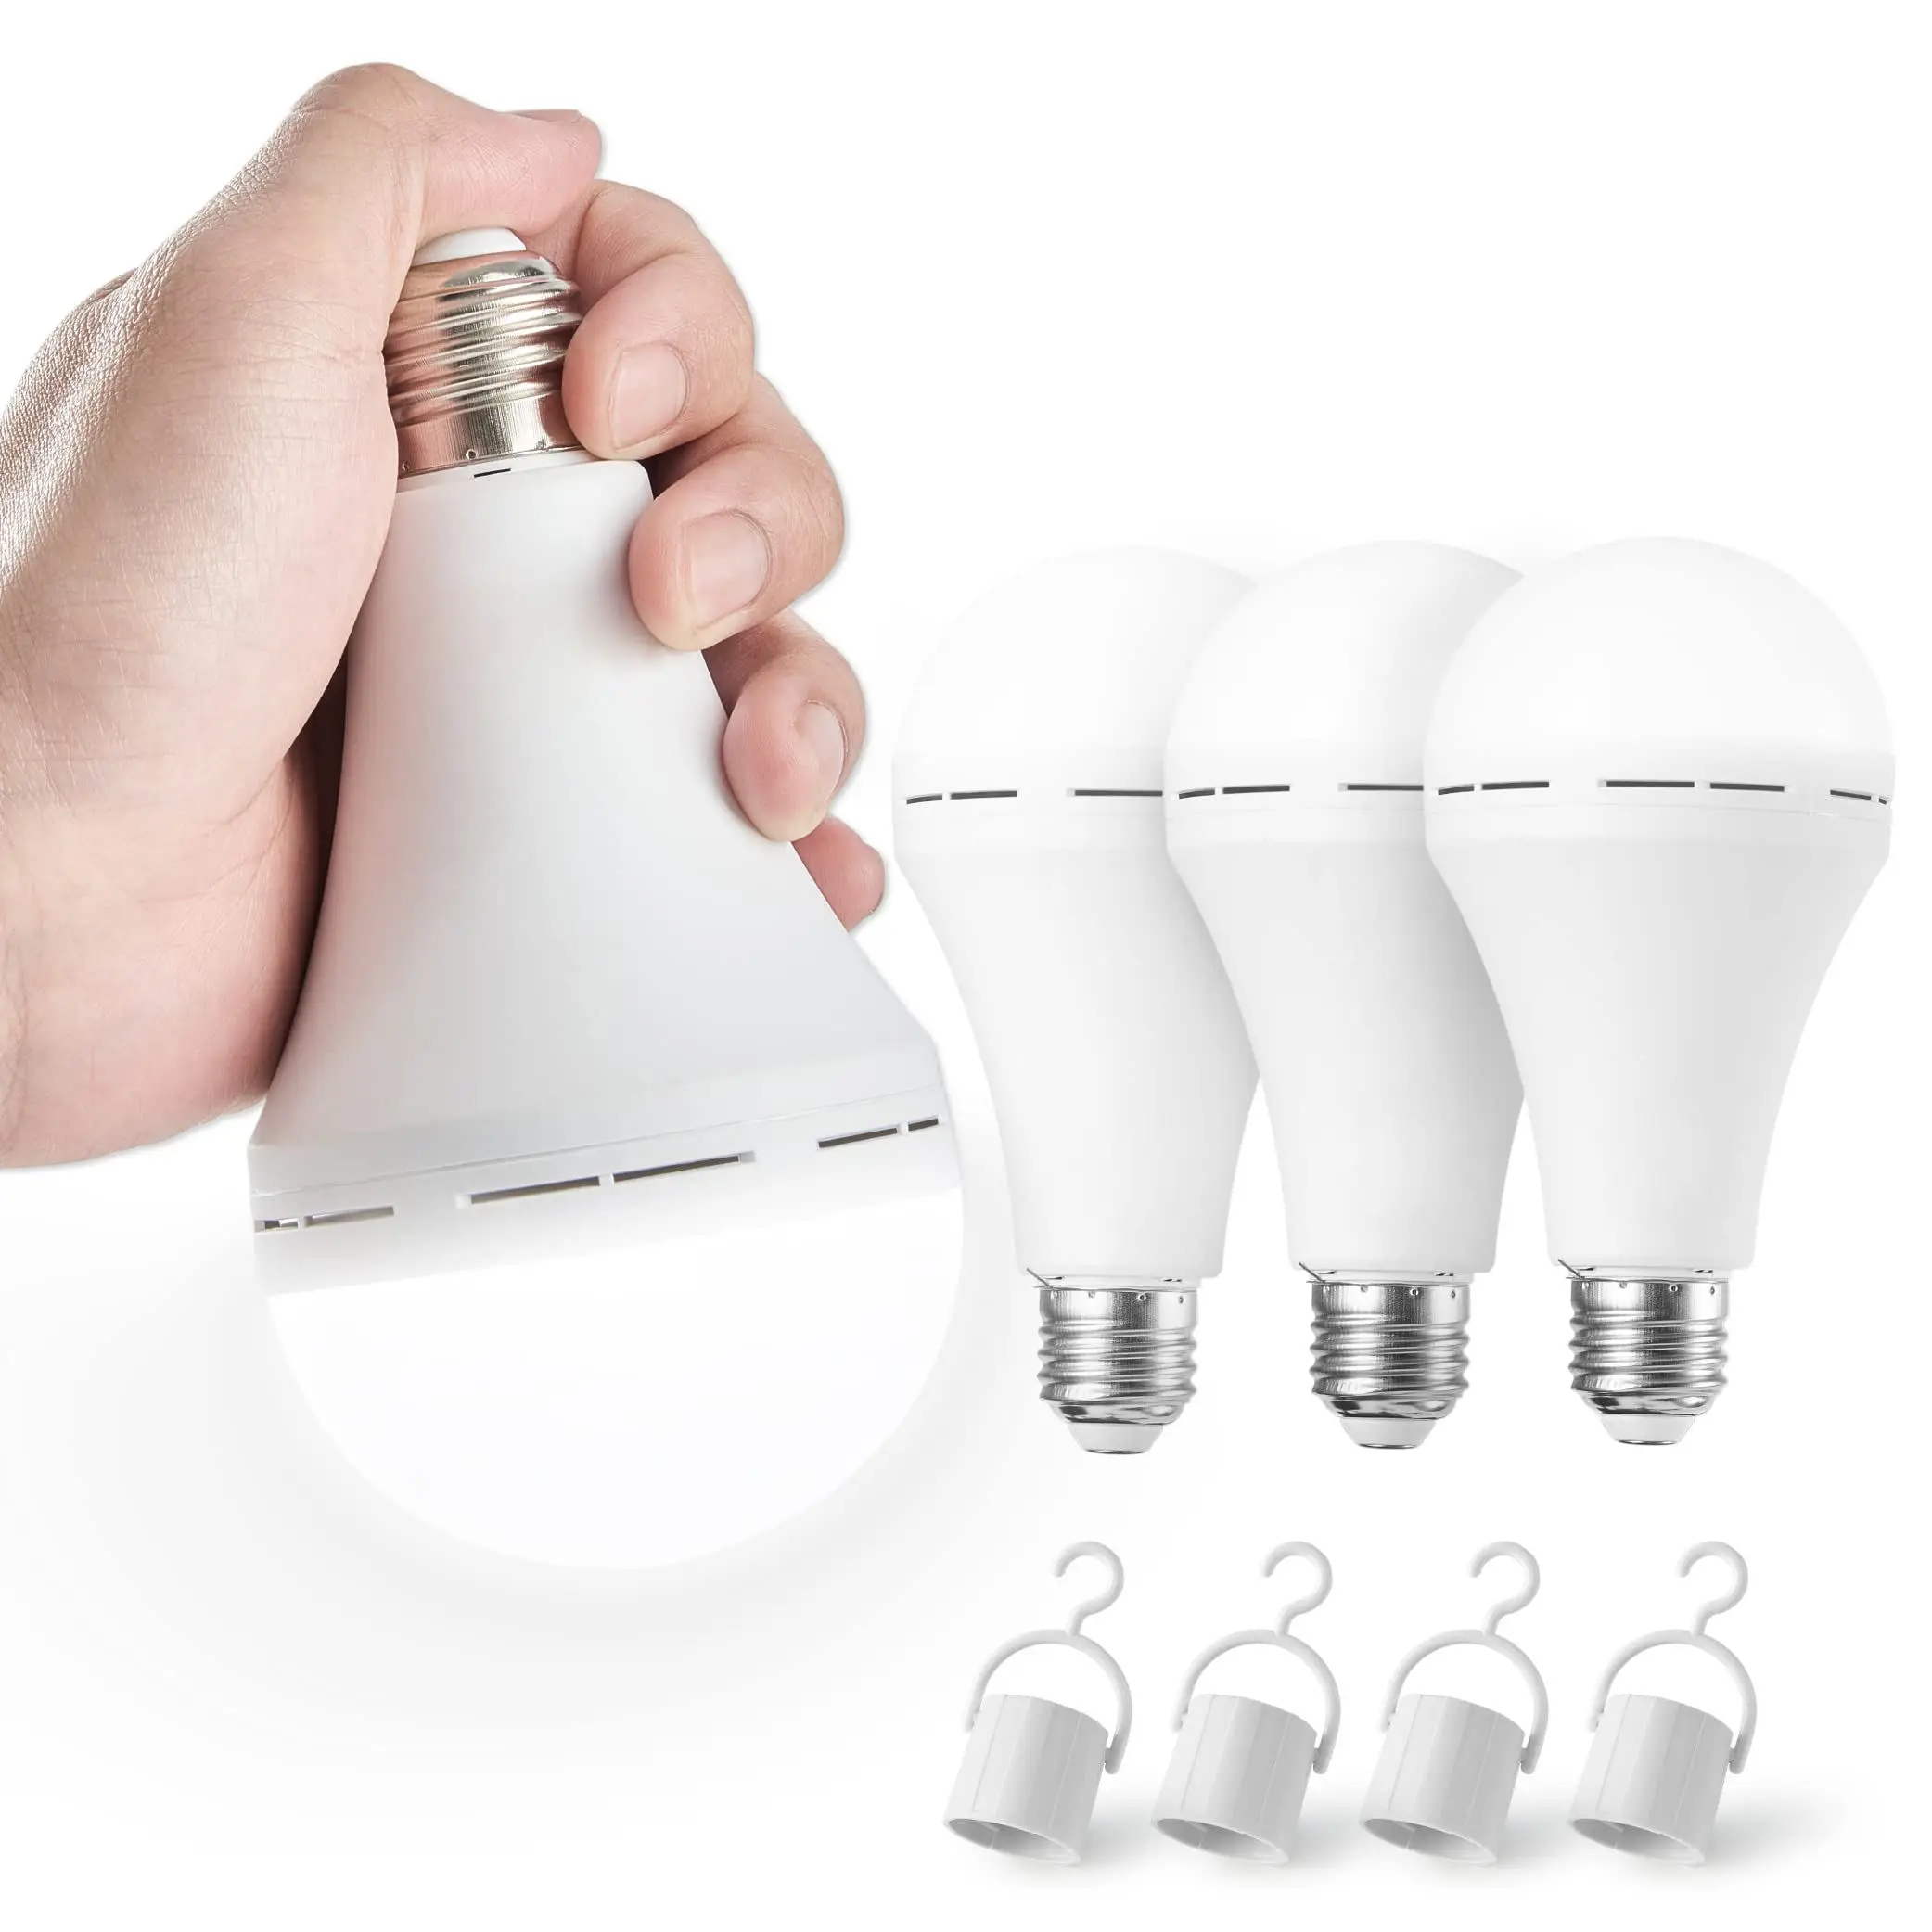 Перезаряжаемая светодиодная лампа аварийного освещения с батареей и сертификатом V16 - Доступна в вариантах E27 мощностью 7 Вт, 9 Вт, 12 Вт и 15 Вт белого цвета